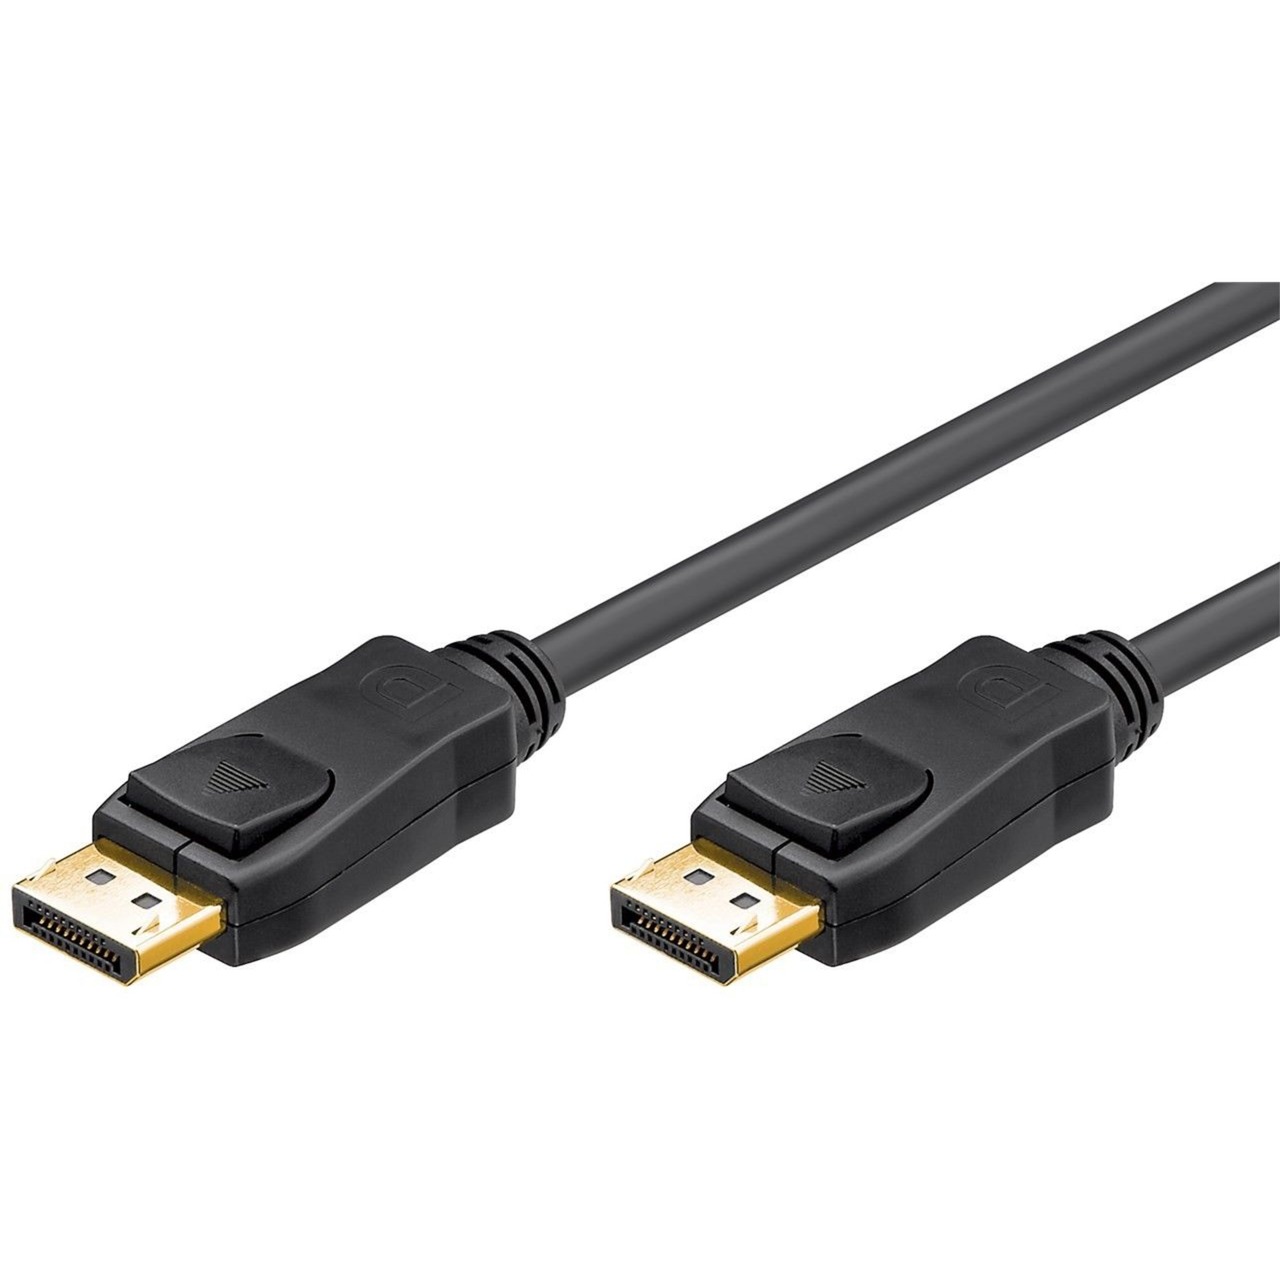 Image of Alternate - DisplayPort 1.2 Verbindungskabel online einkaufen bei Alternate